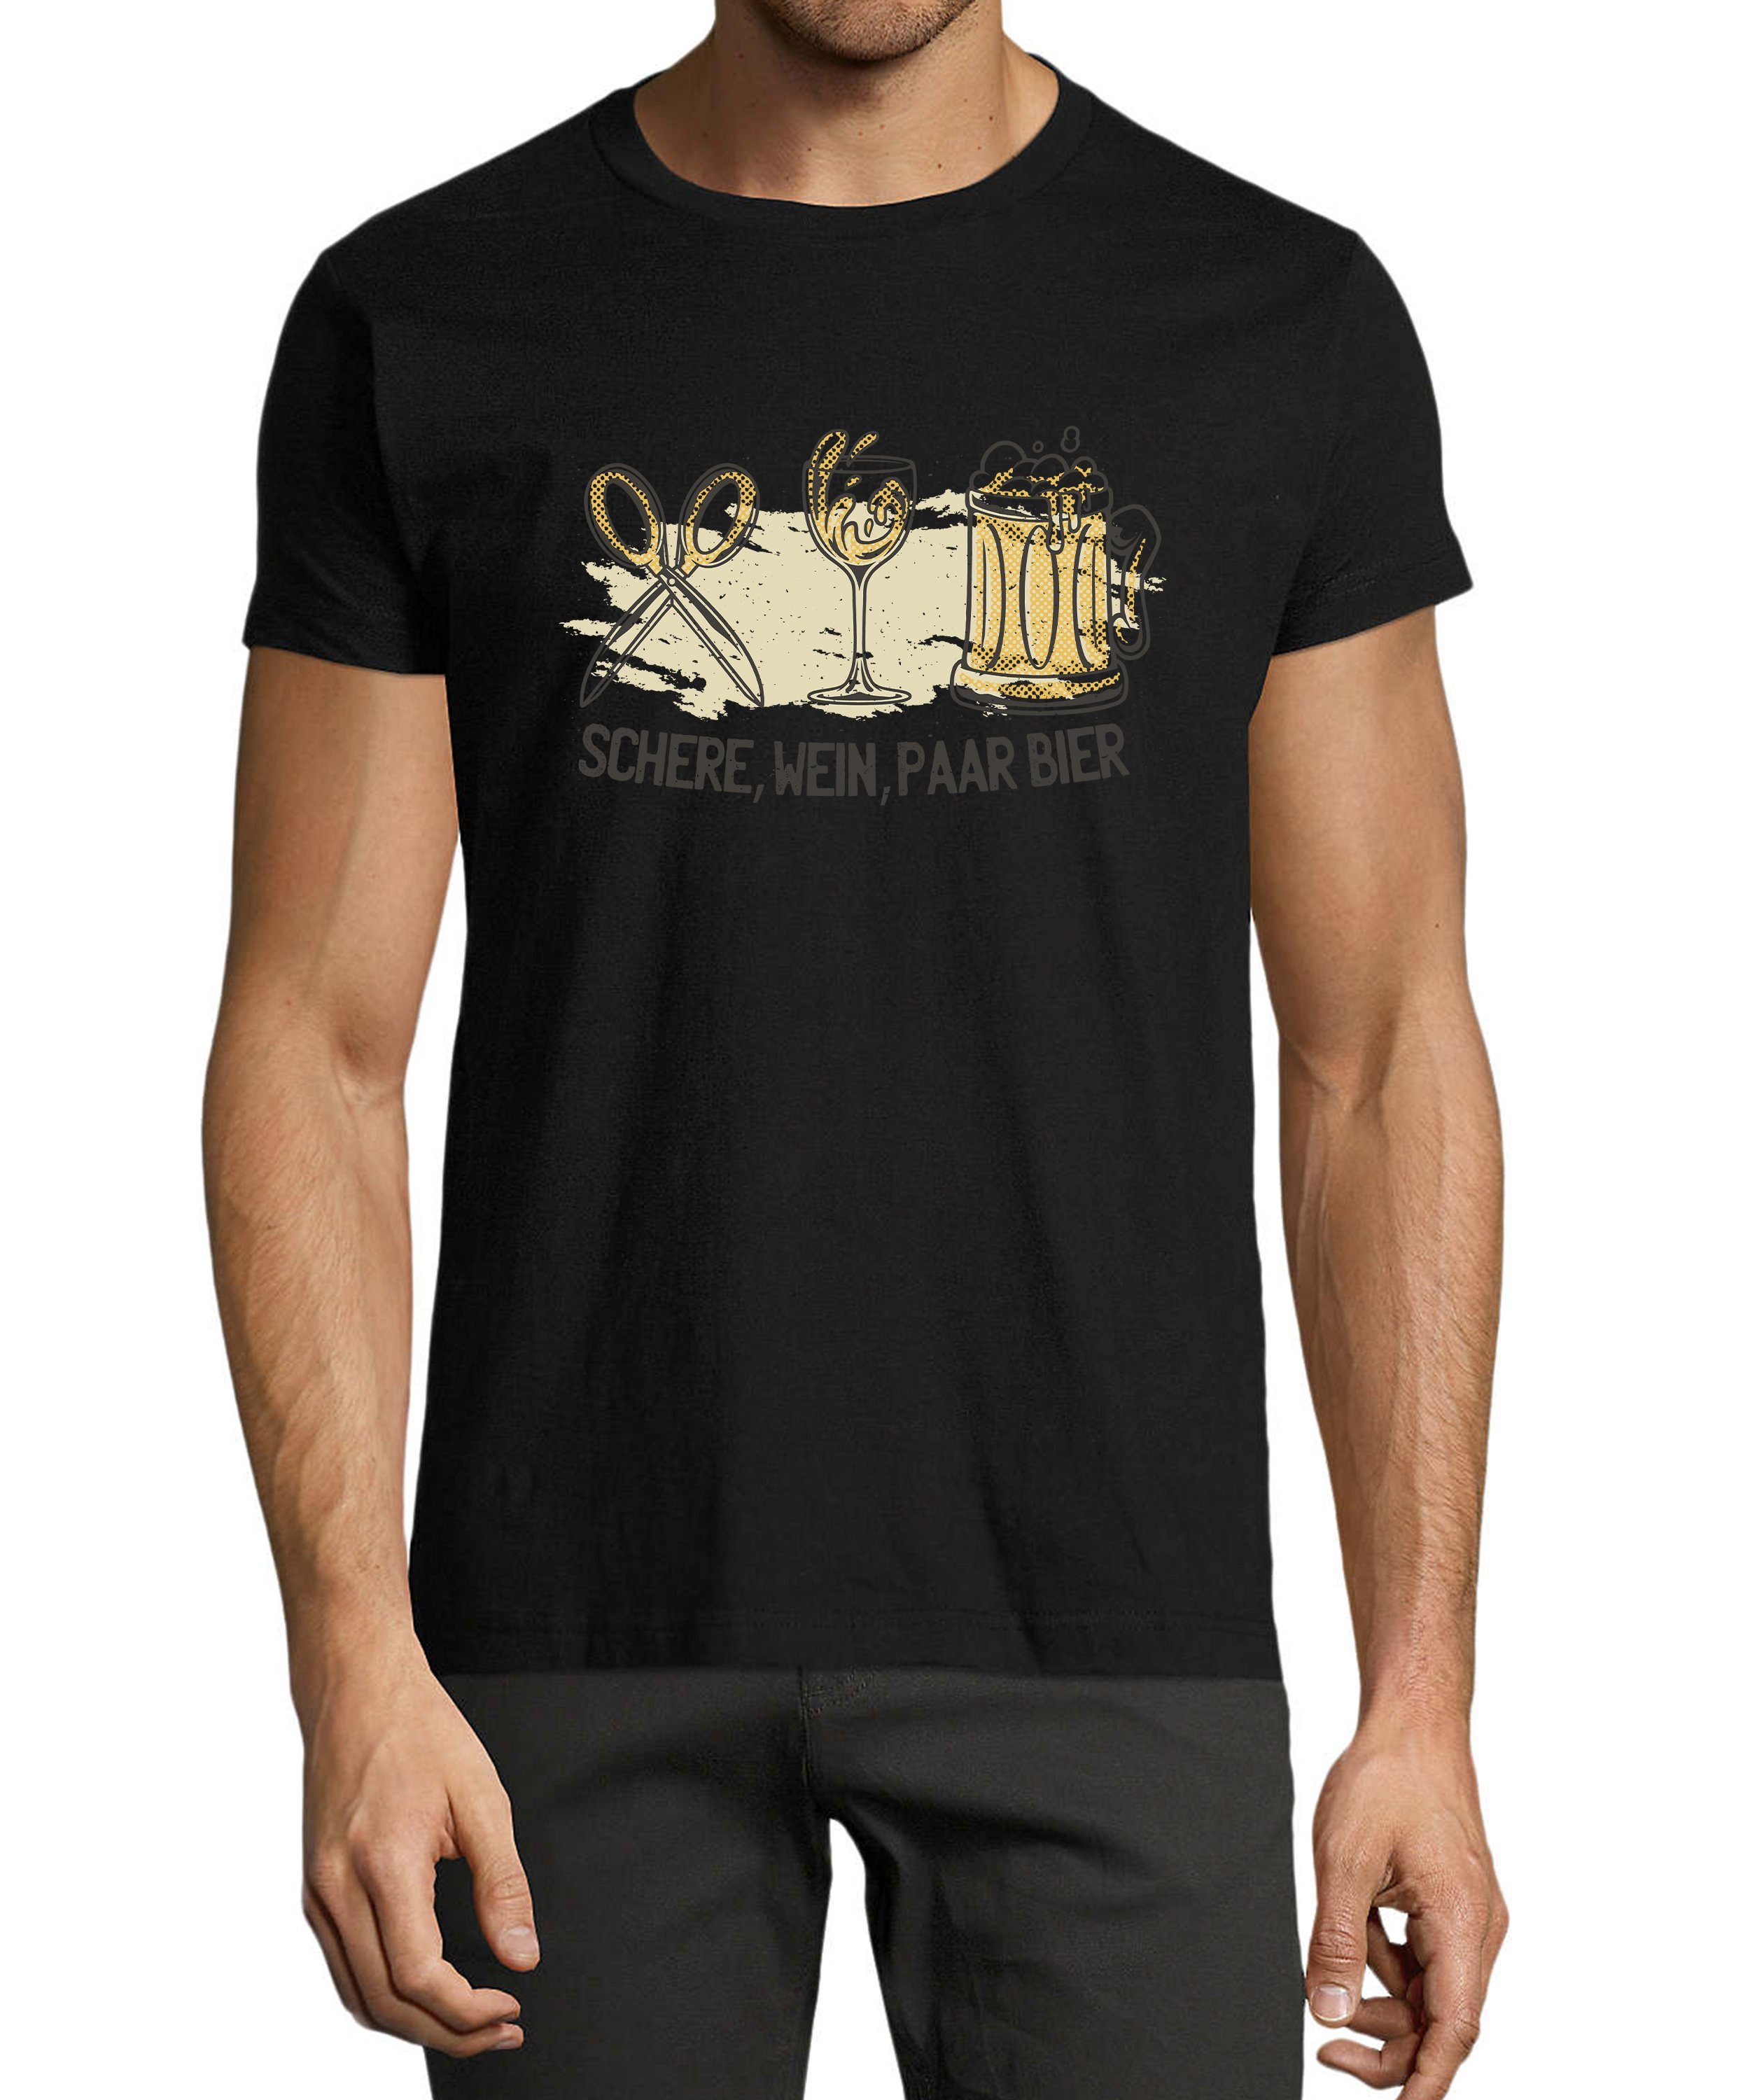 MyDesign24 T-Shirt Herren Sprüche Shirt - Trinkshirt Schere, Wein, Paar Bier Baumwollshirt mit Aufdruck Regular Fit, i321 schwarz